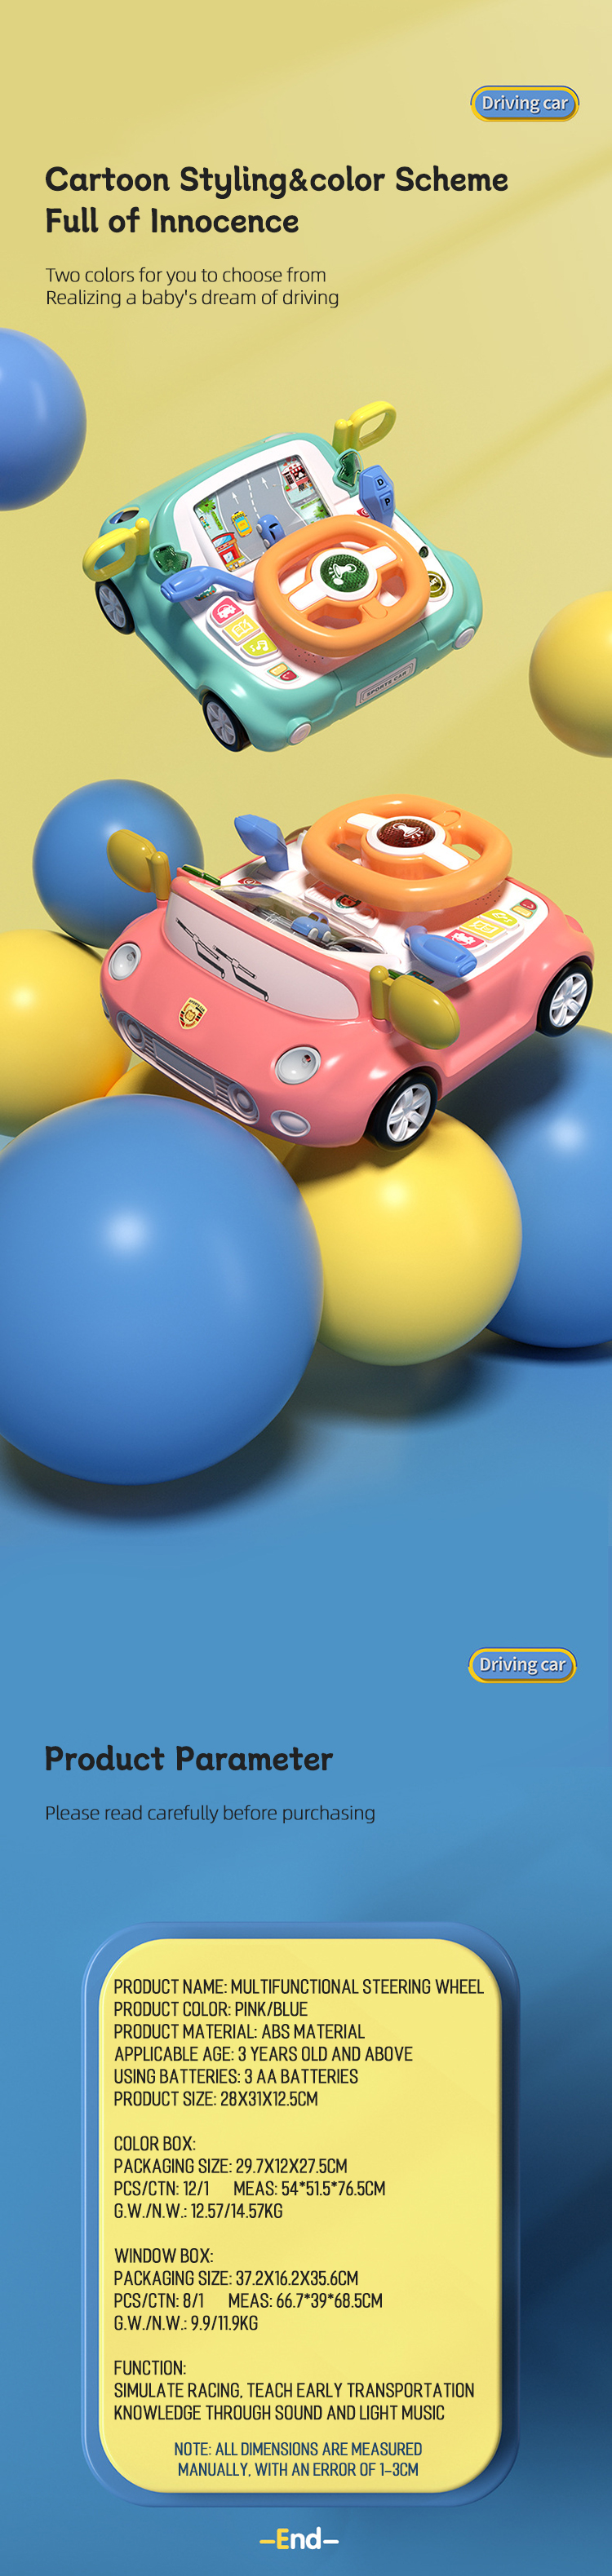 Xoguete do volante (7)